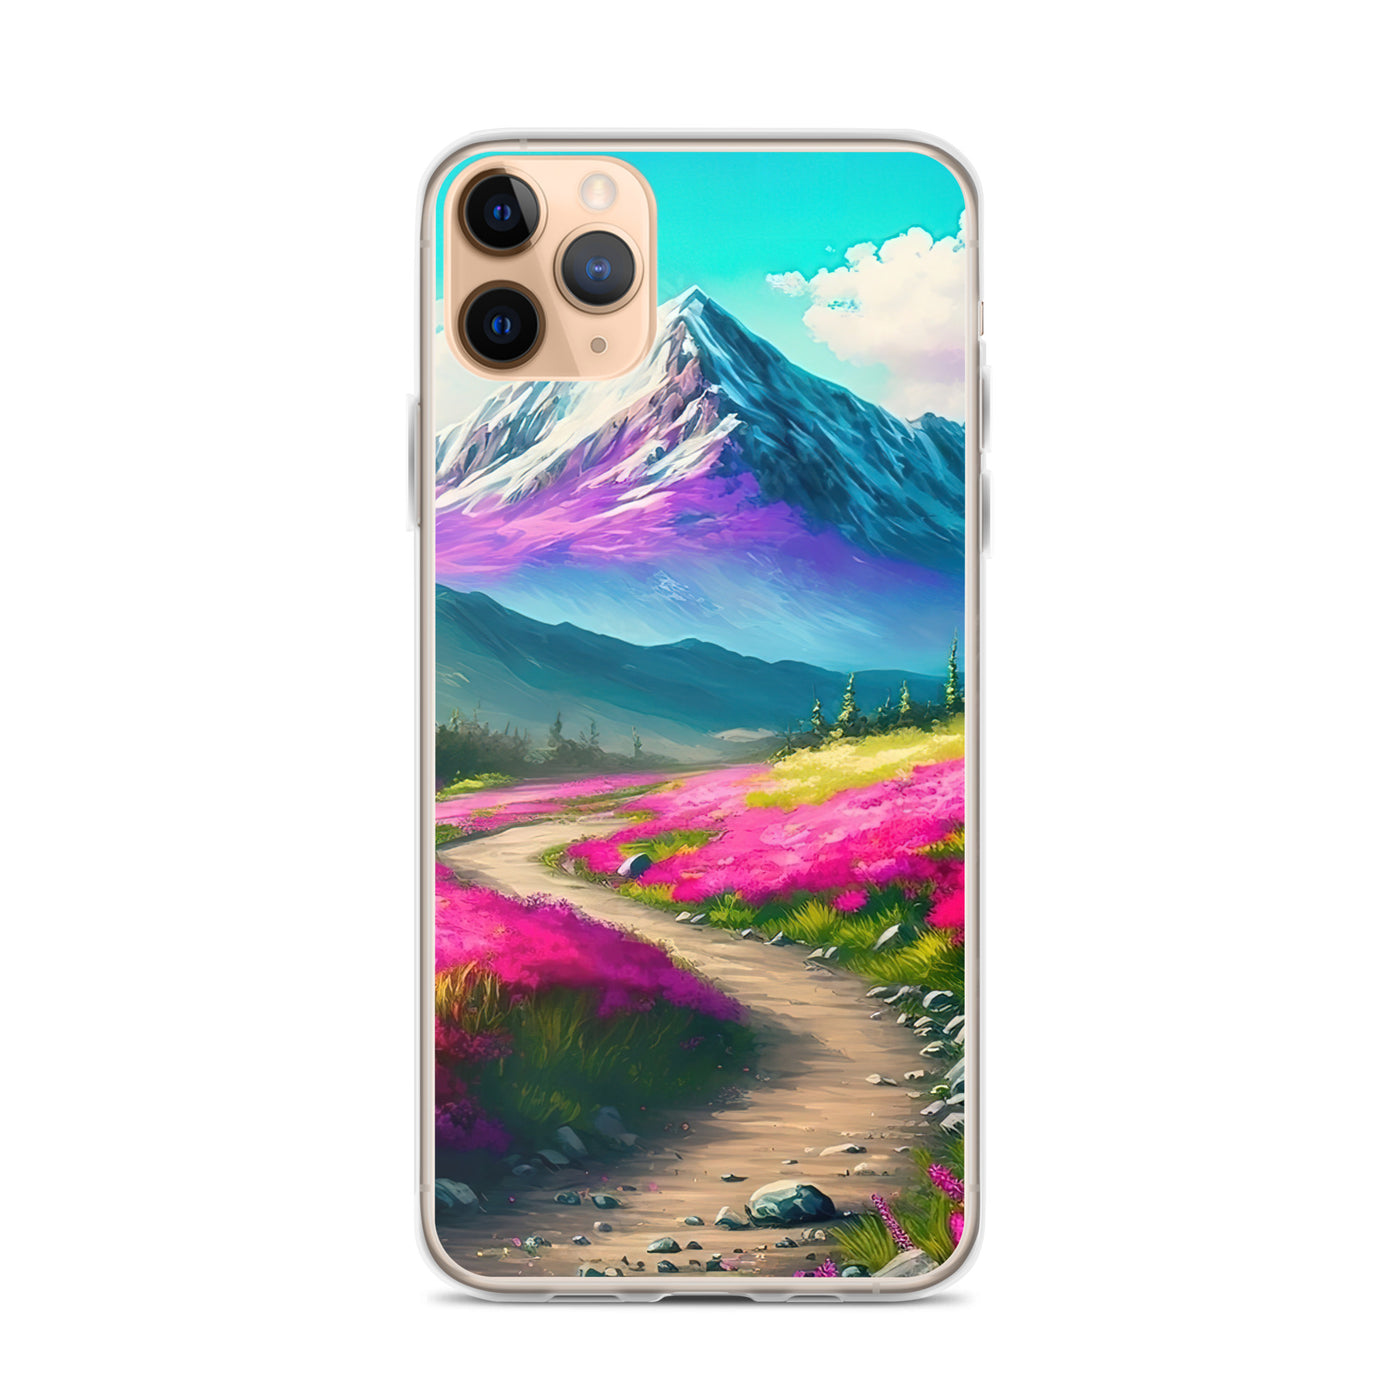 Berg, pinke Blumen und Wanderweg - Landschaftsmalerei - iPhone Schutzhülle (durchsichtig) berge xxx iPhone 11 Pro Max